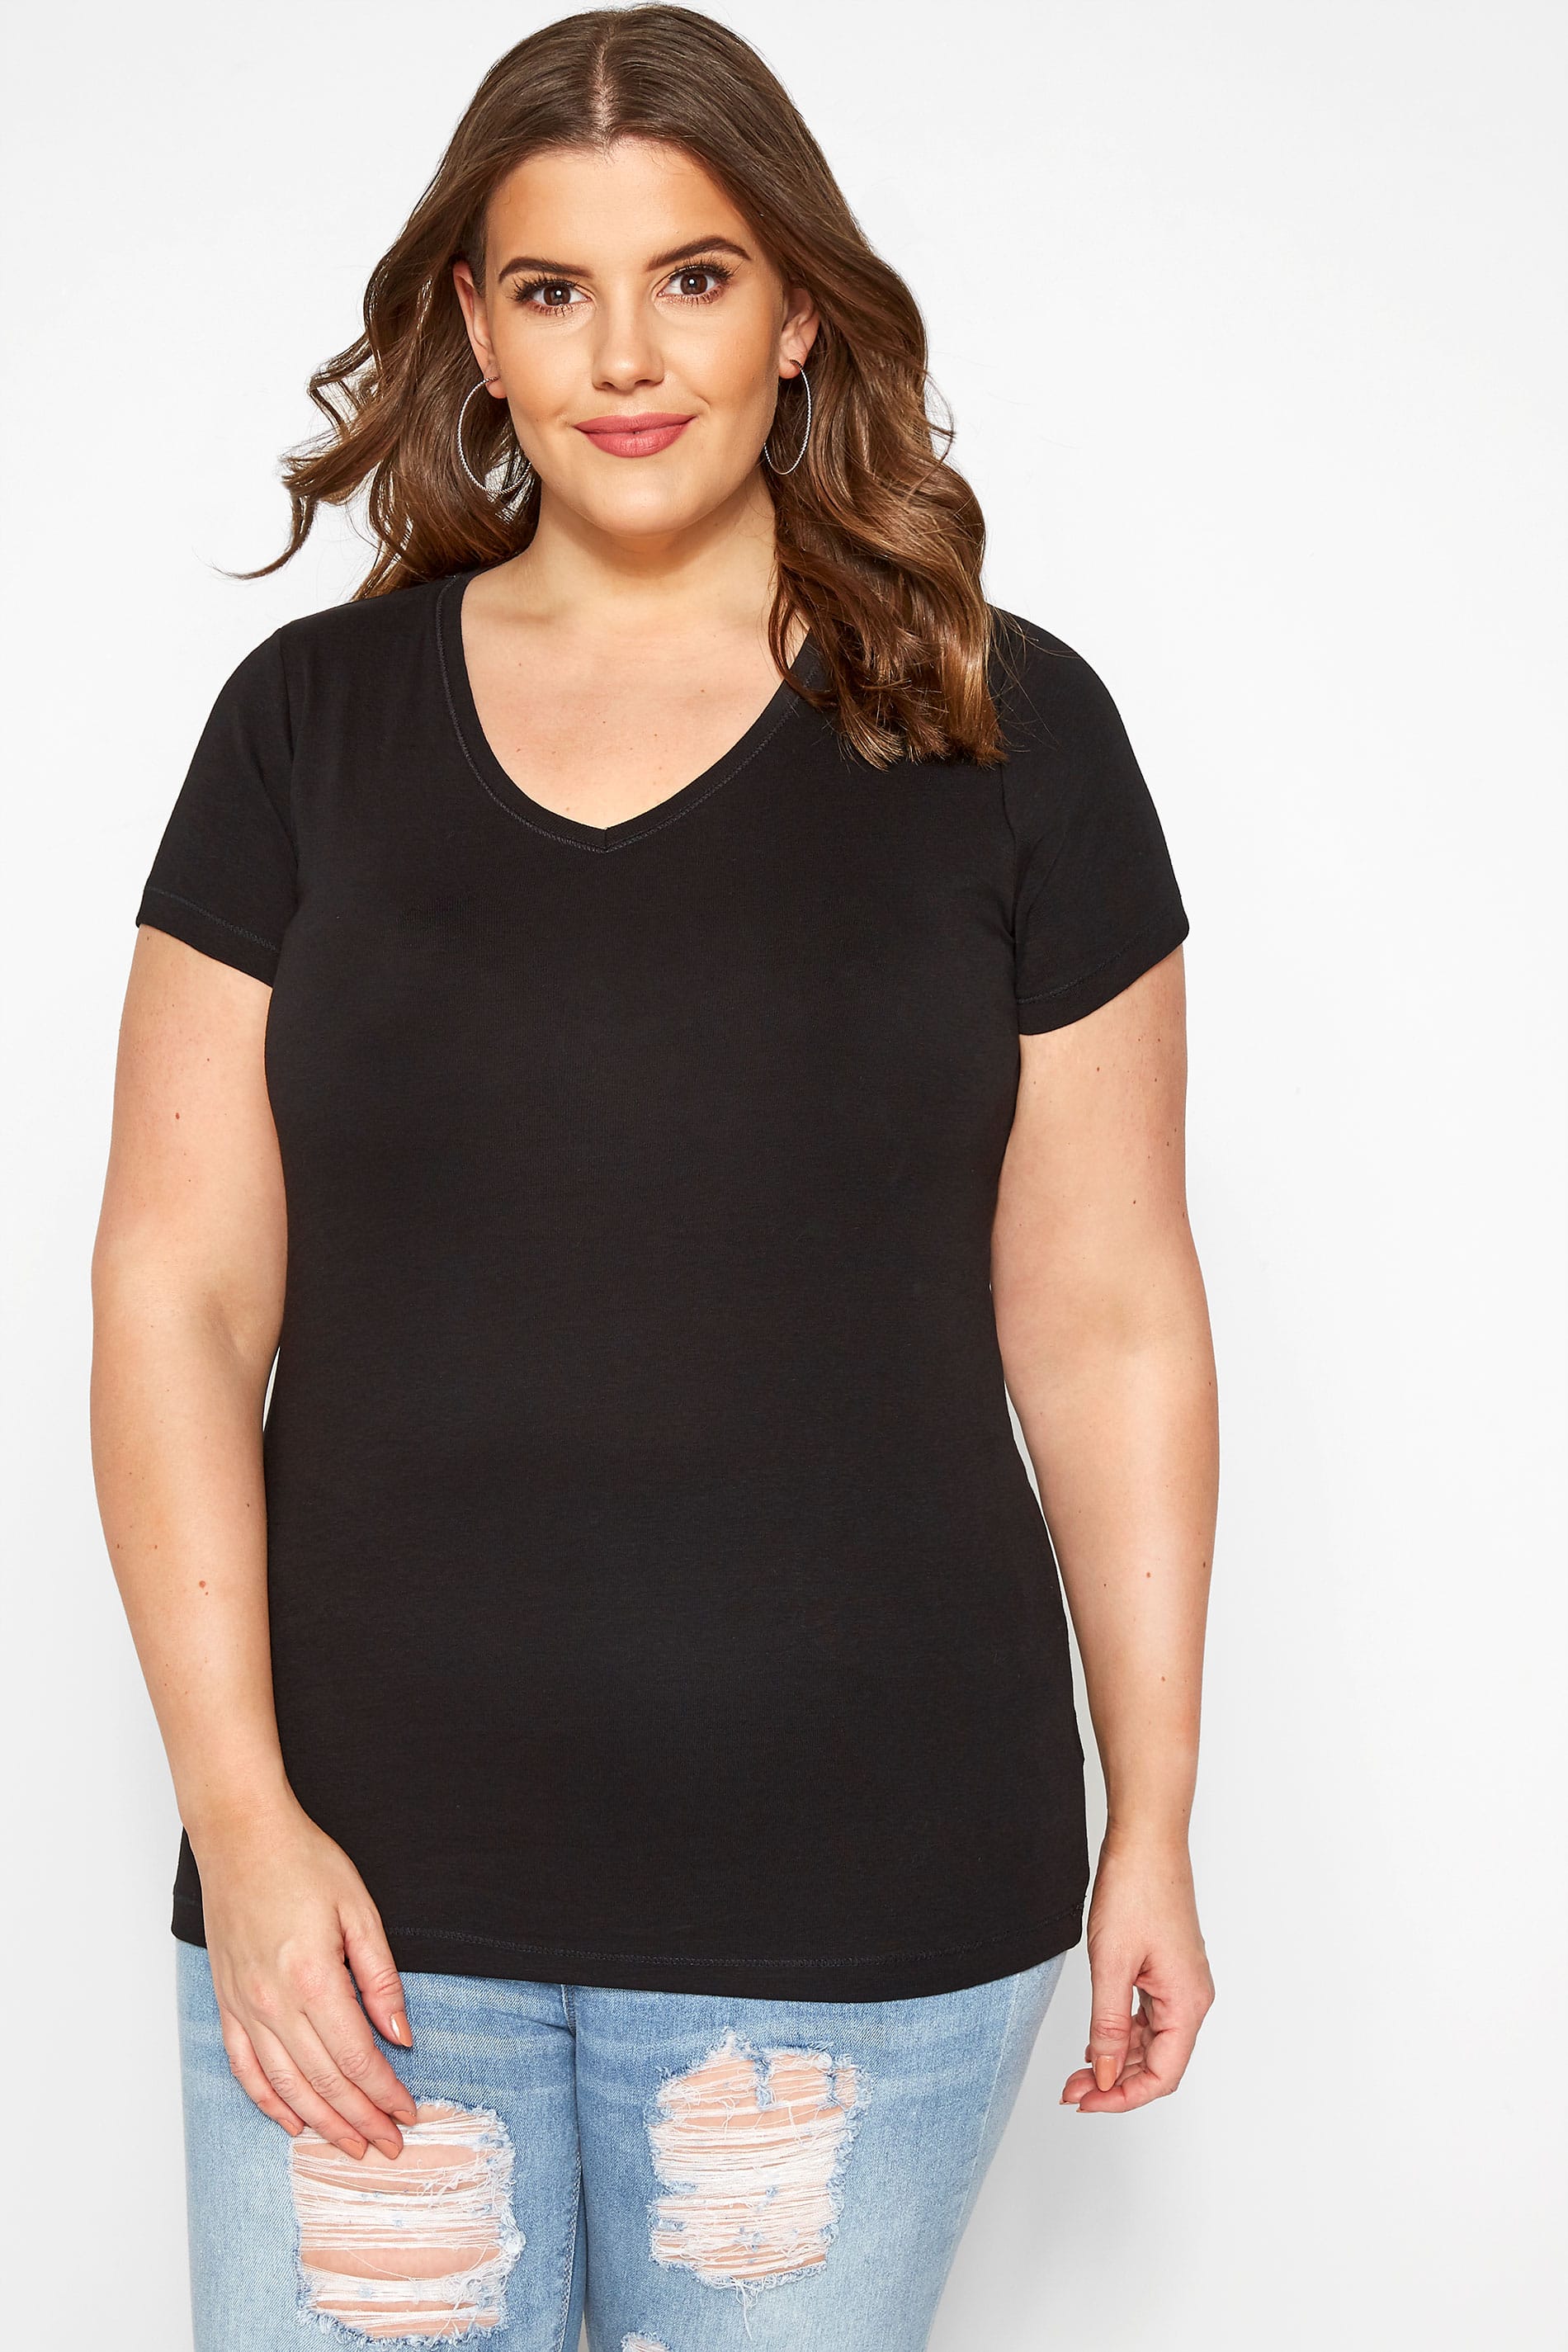 Plus Size Black V-Neck T-Shirt | Sizes 16 to 36 | Yours Clothing